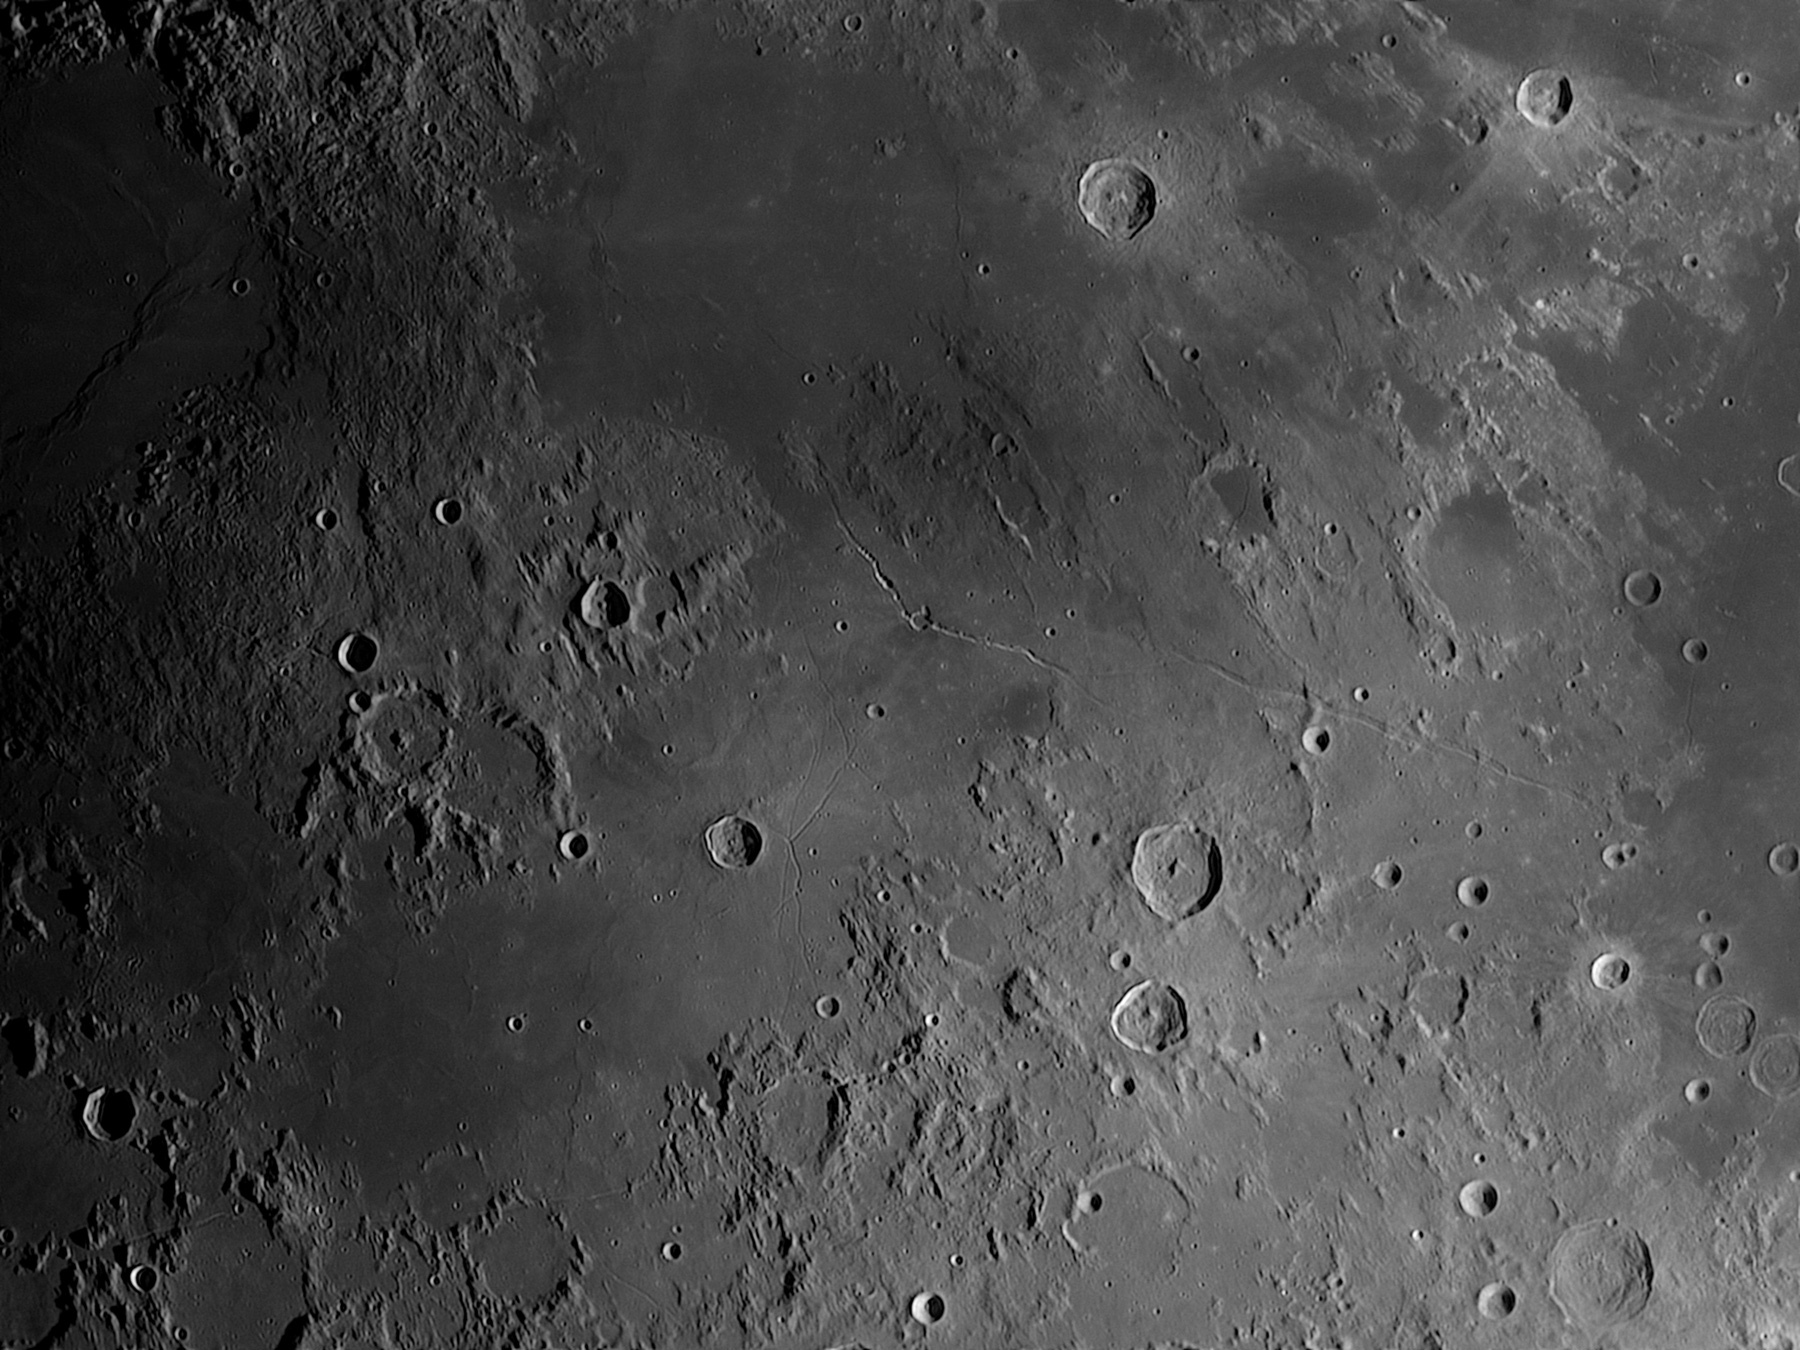 Lune-20201123_Hyginus-AS.jpg.84610b2a59141a7e2bcc27c9b1651a2c.jpg